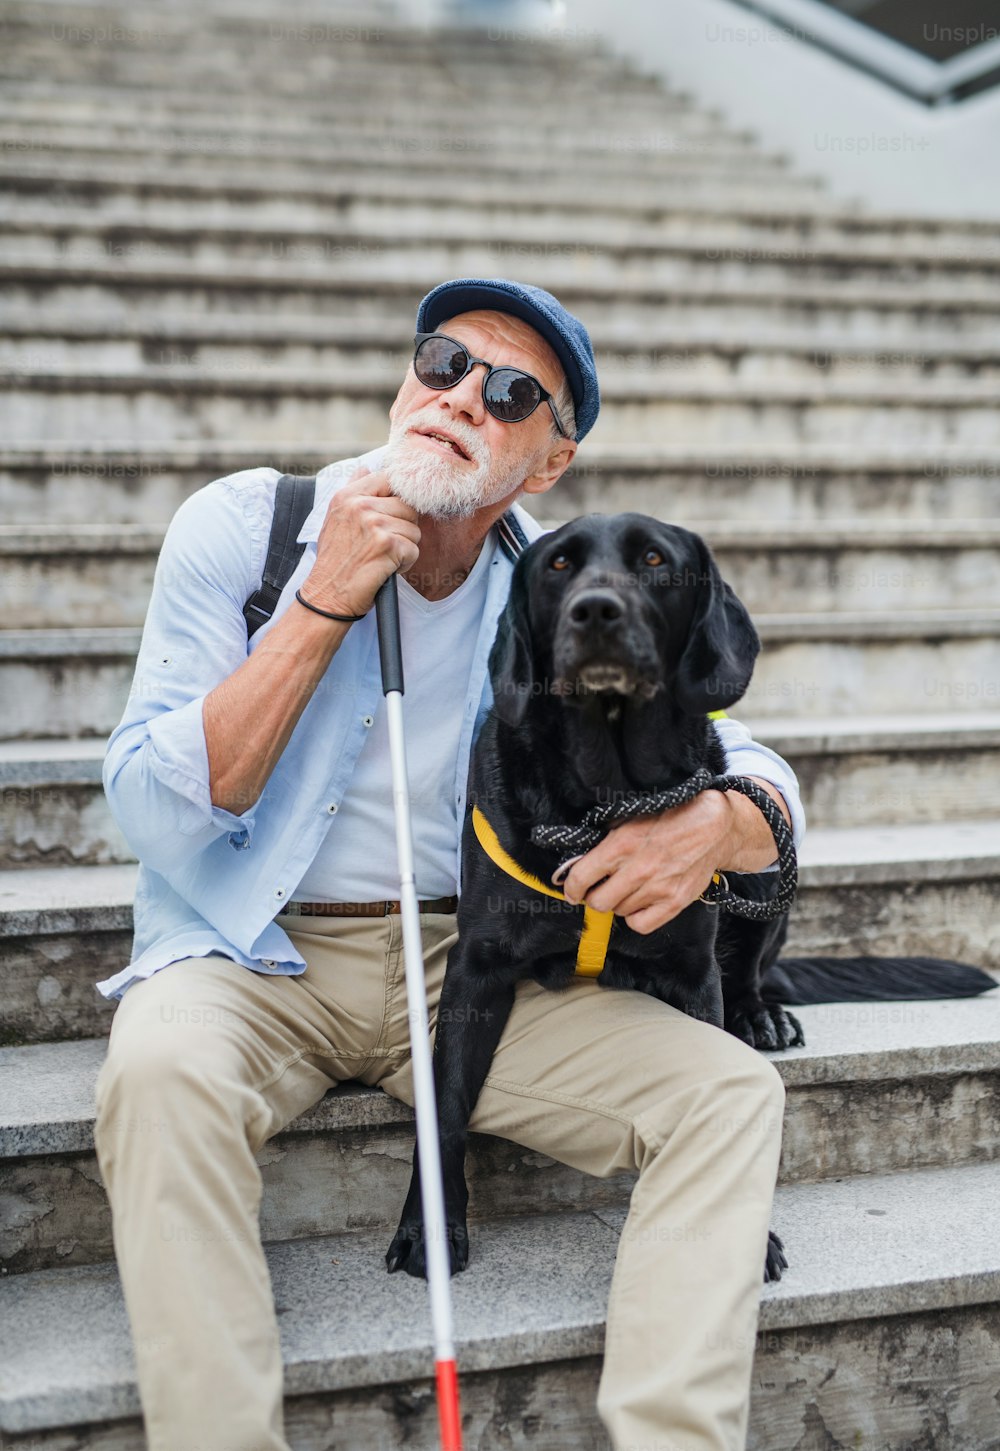 Vorderansicht eines älteren blinden Mannes mit Blindenhund, der die Treppe in der Stadt sitzt und sich ausruht.